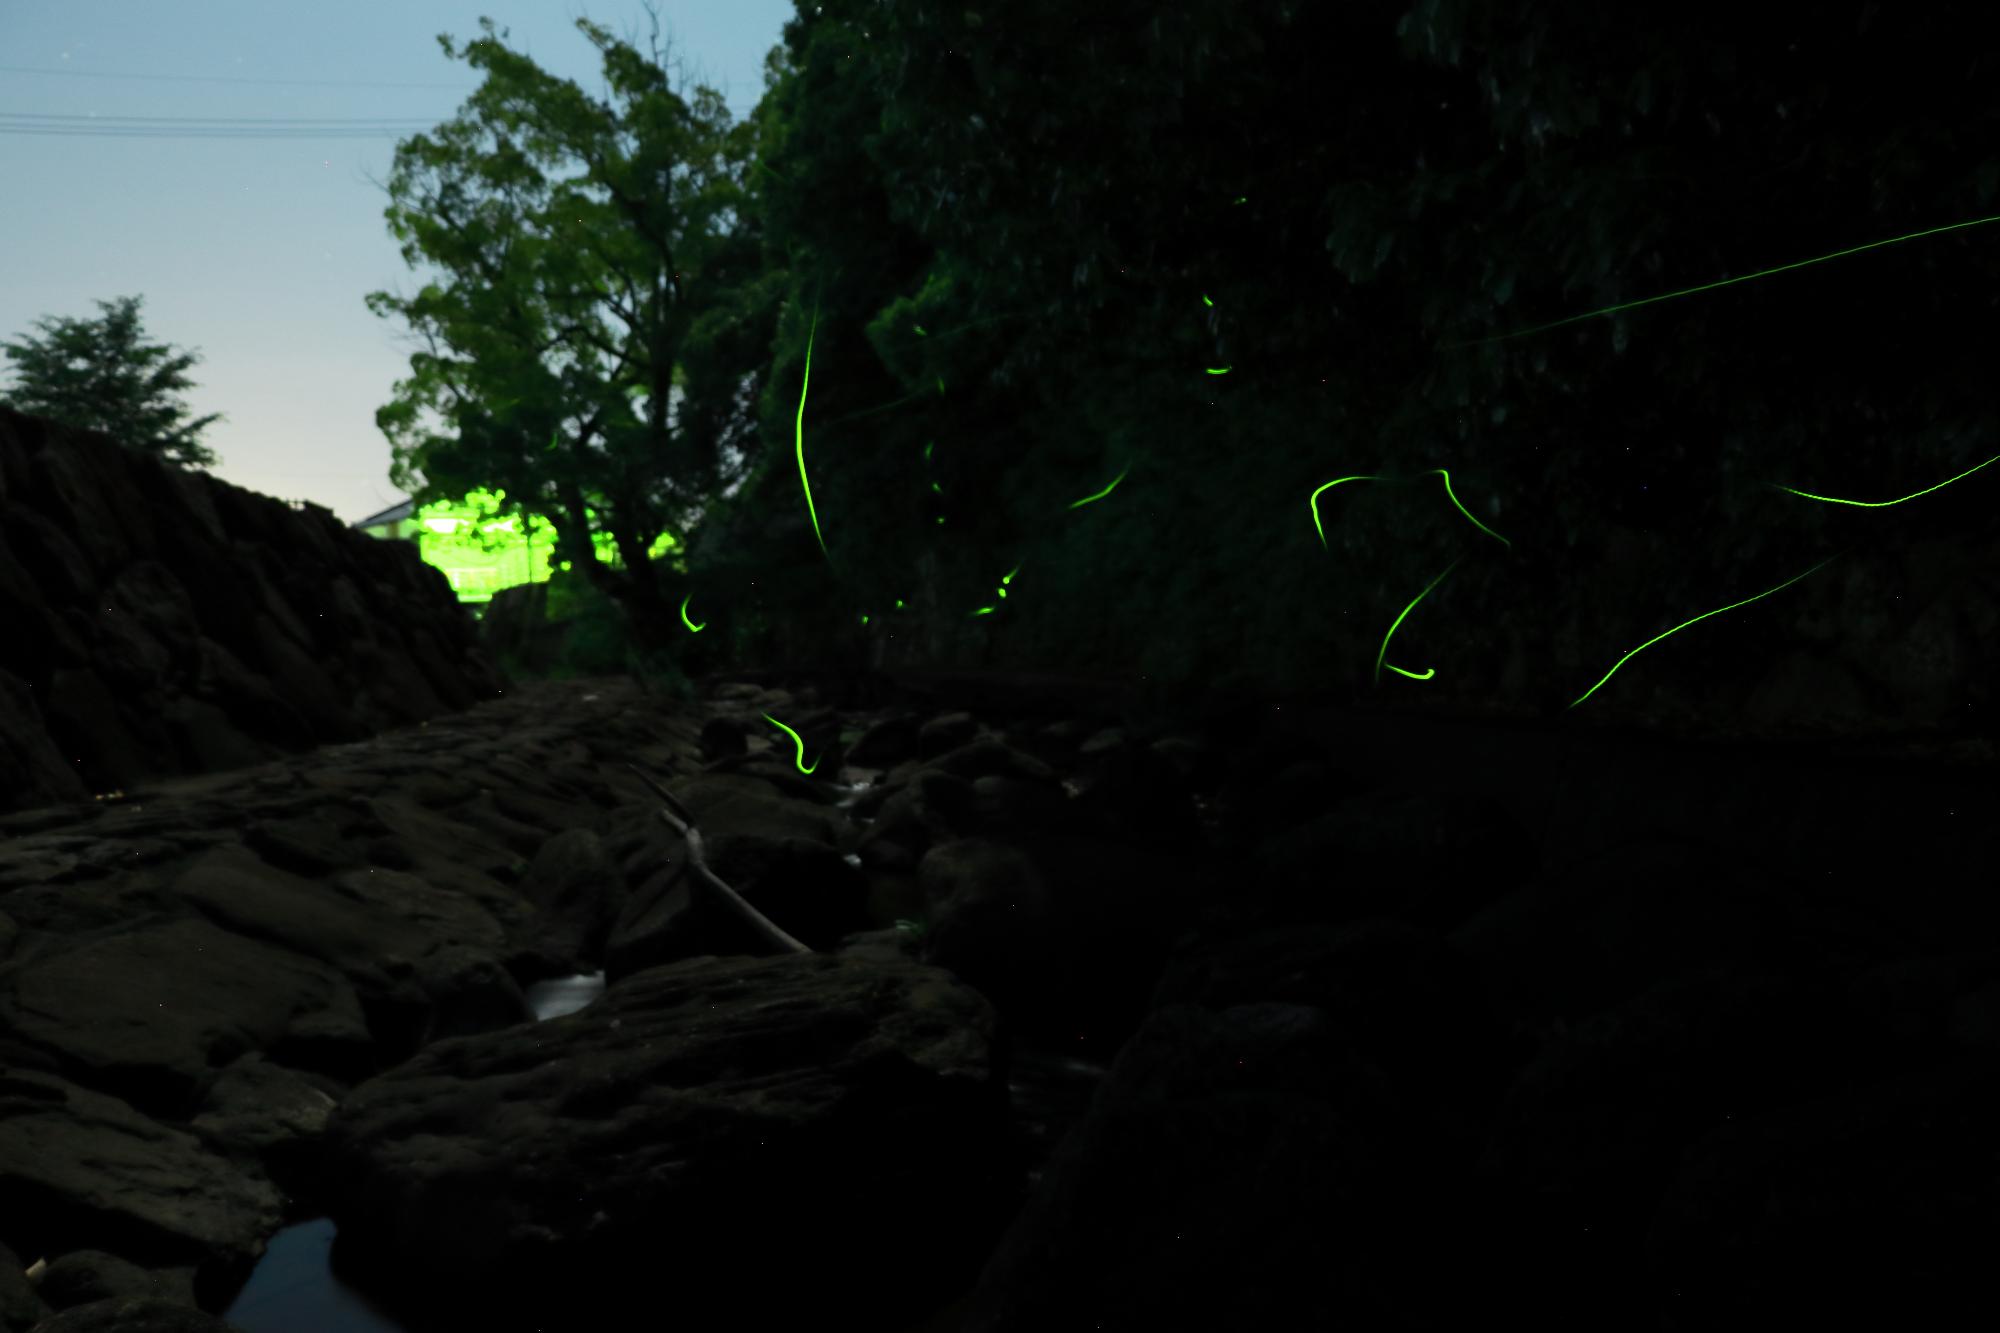 神懸通地区内海ダム広場にて、夜にホタルが光を放ちながら飛んでいる様子